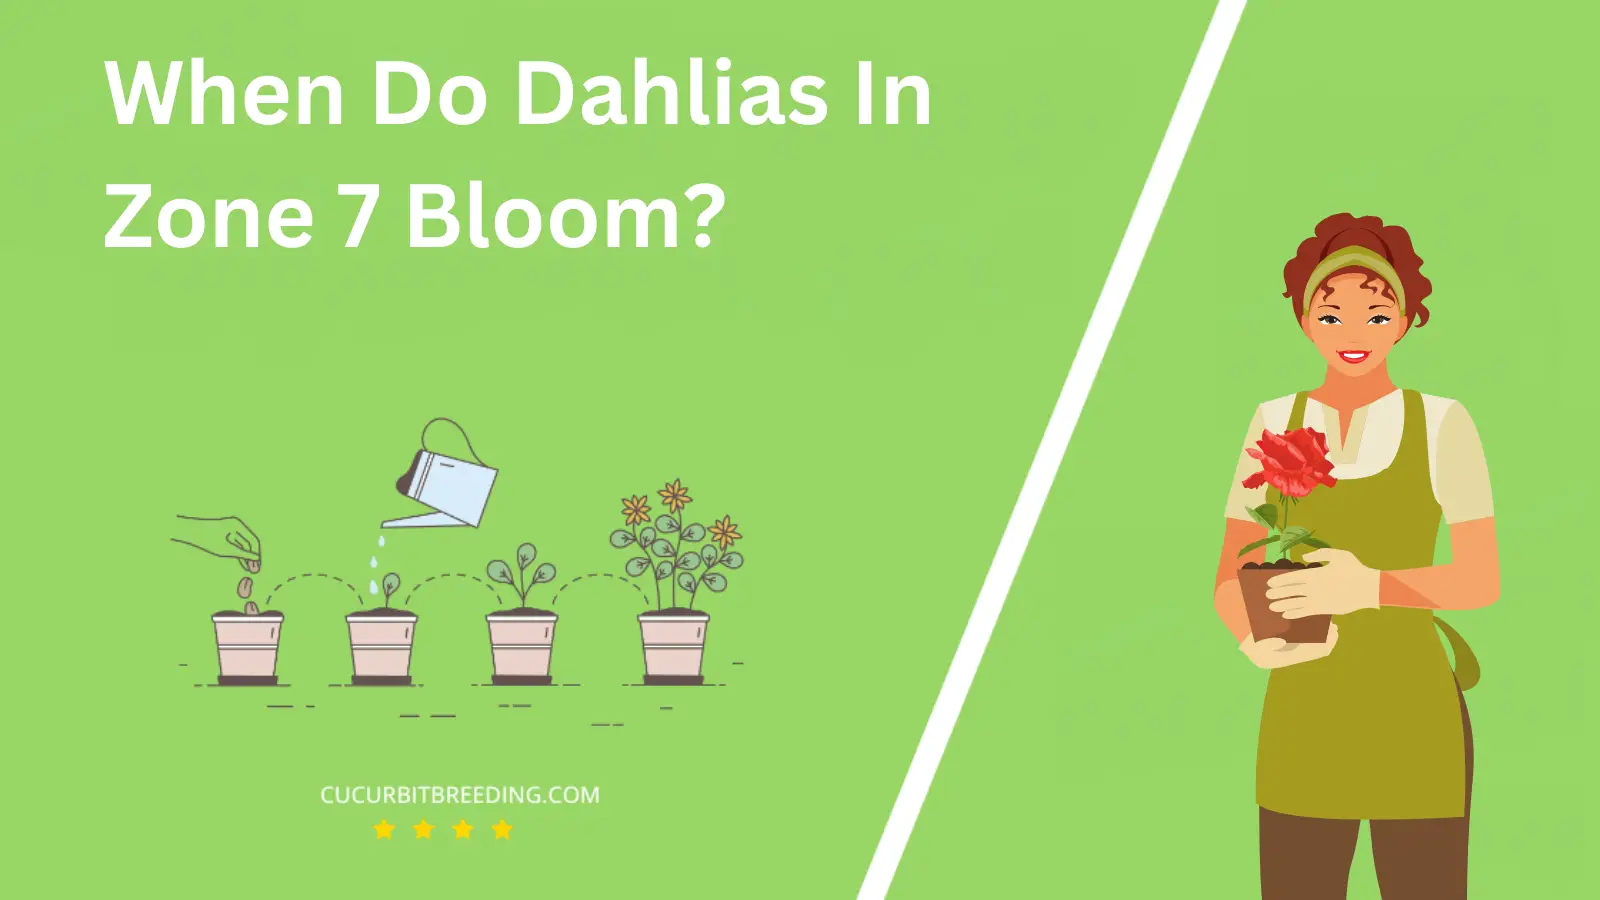 When Do Dahlias In Zone 7 Bloom?